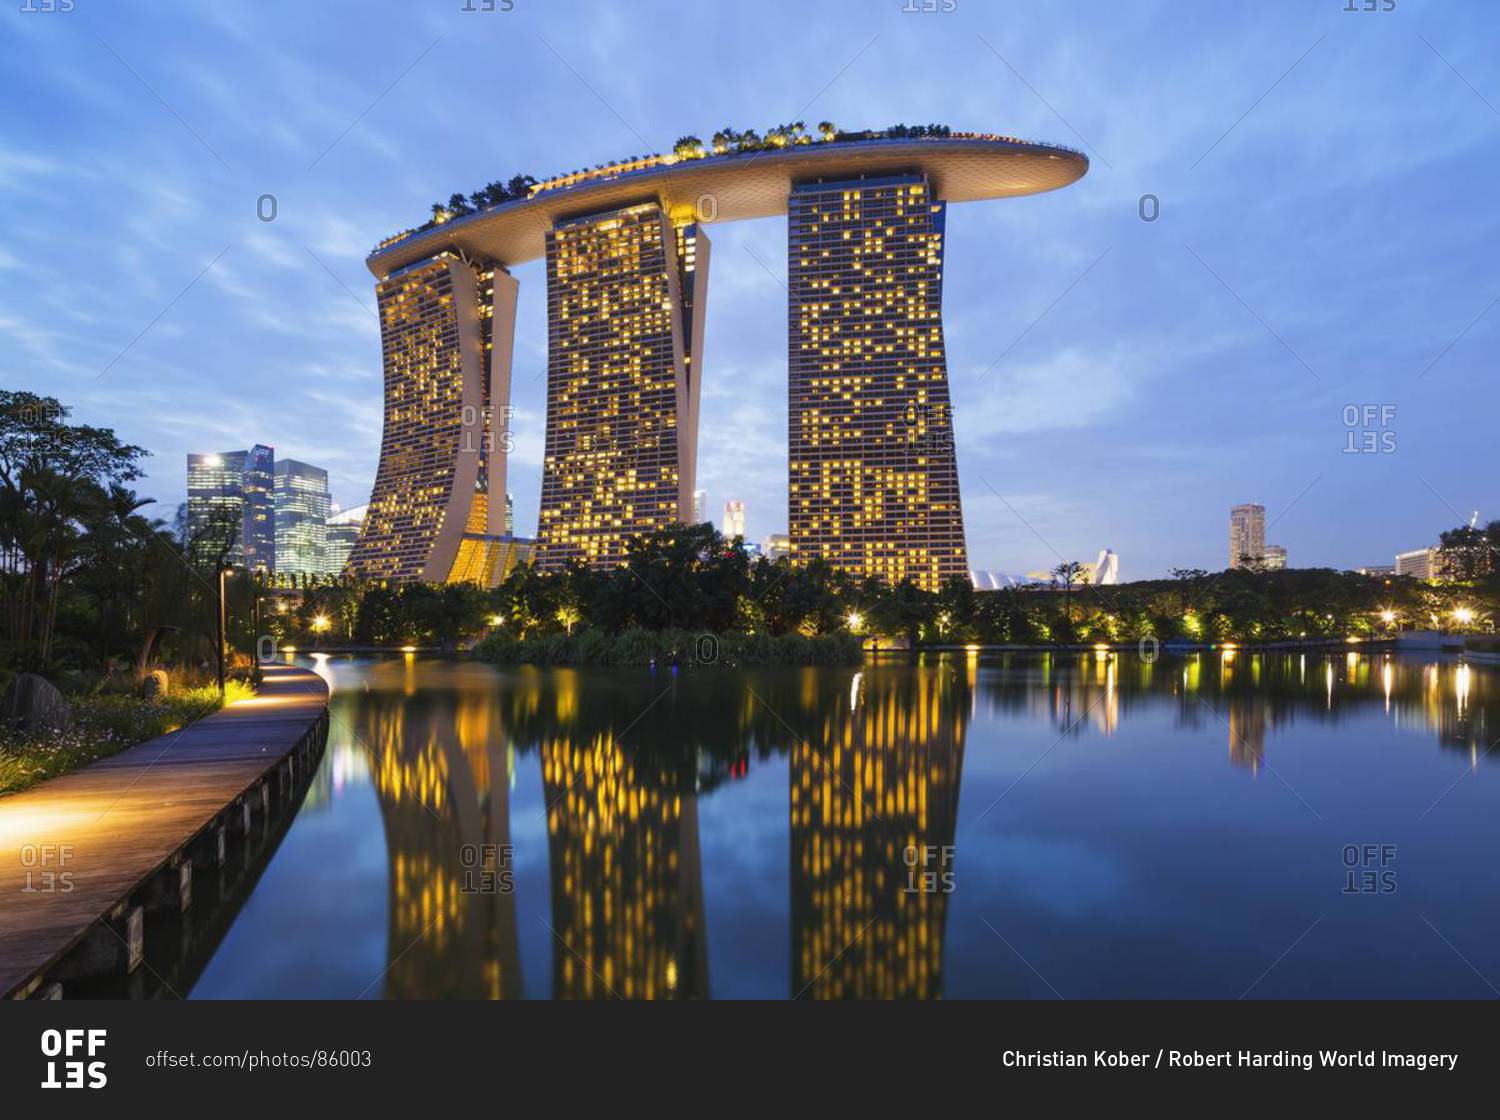 сингапур архитектура зданий